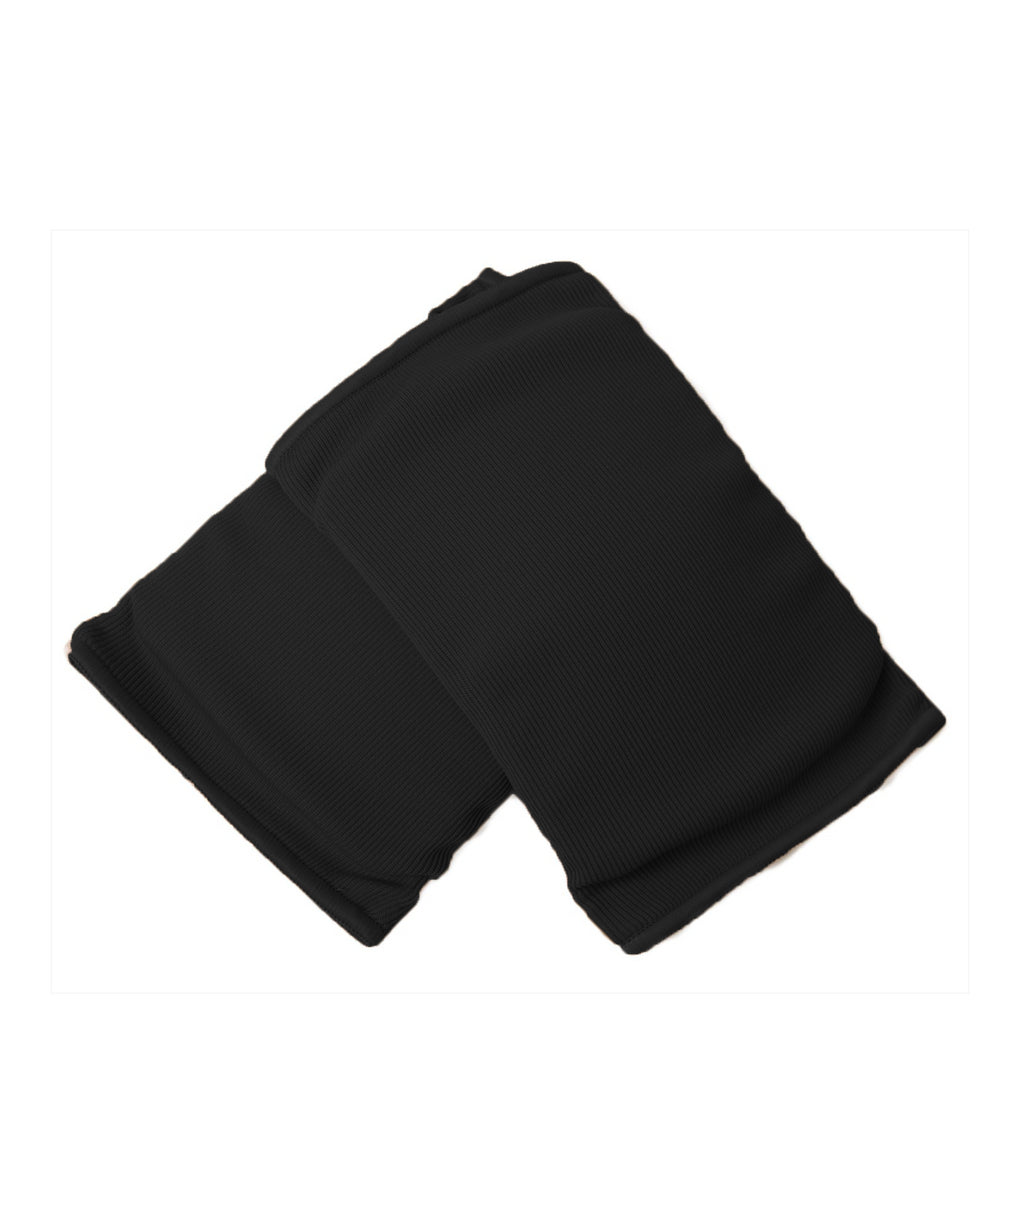 Black knees pads